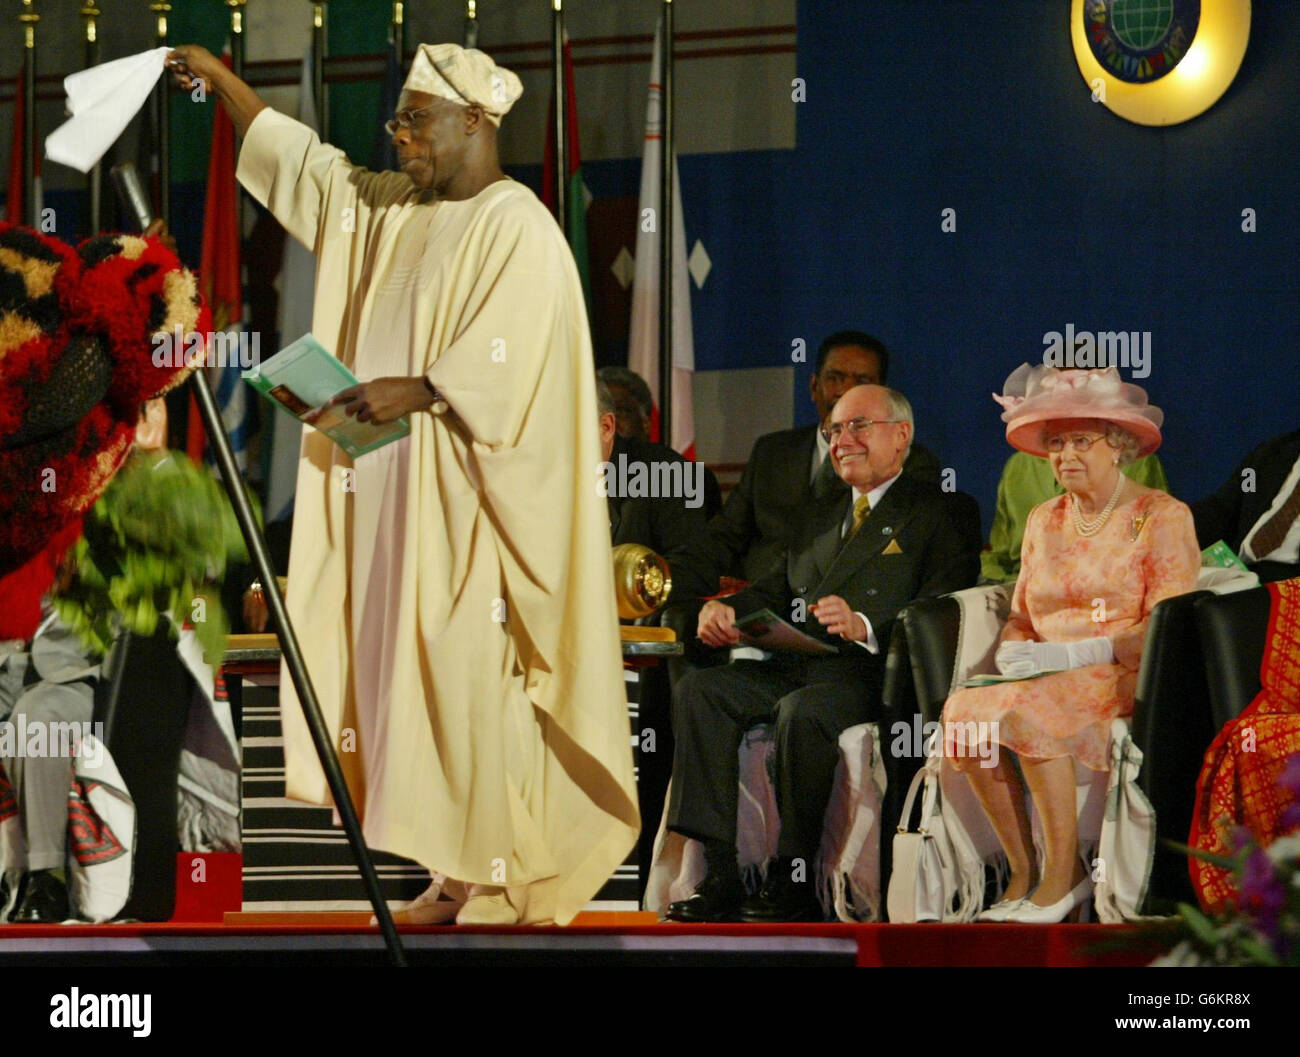 La reine Elizabeth II de Grande-Bretagne regarde le président du Nigeria, Olusegun Obasanjo, tenir un tissu blanc comme symbole de paix lors de la session d'ouverture du Sommet du Commonwealth à Abuja, au Nigeria.* la Reine s'est adressée au sommet auquel ont participé des dirigeants politiques, dont le Premier ministre Tony Blair, à la tête du Commonwealth, une organisation mondiale de 54 États. Banque D'Images